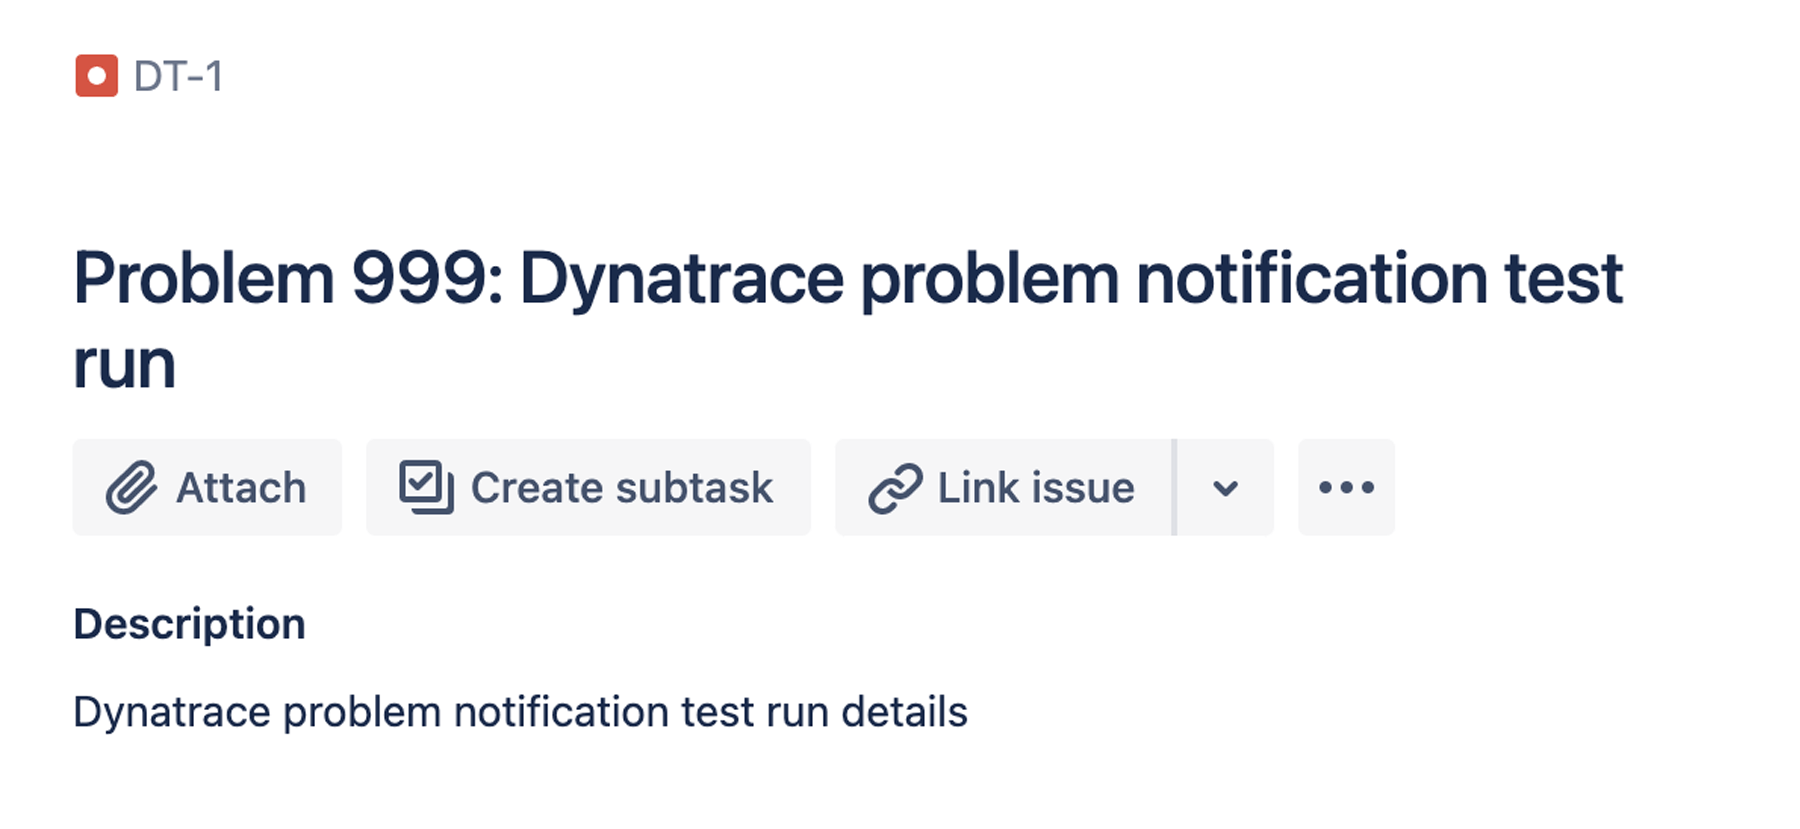 Exécution de test de notification de problème Dynatrace